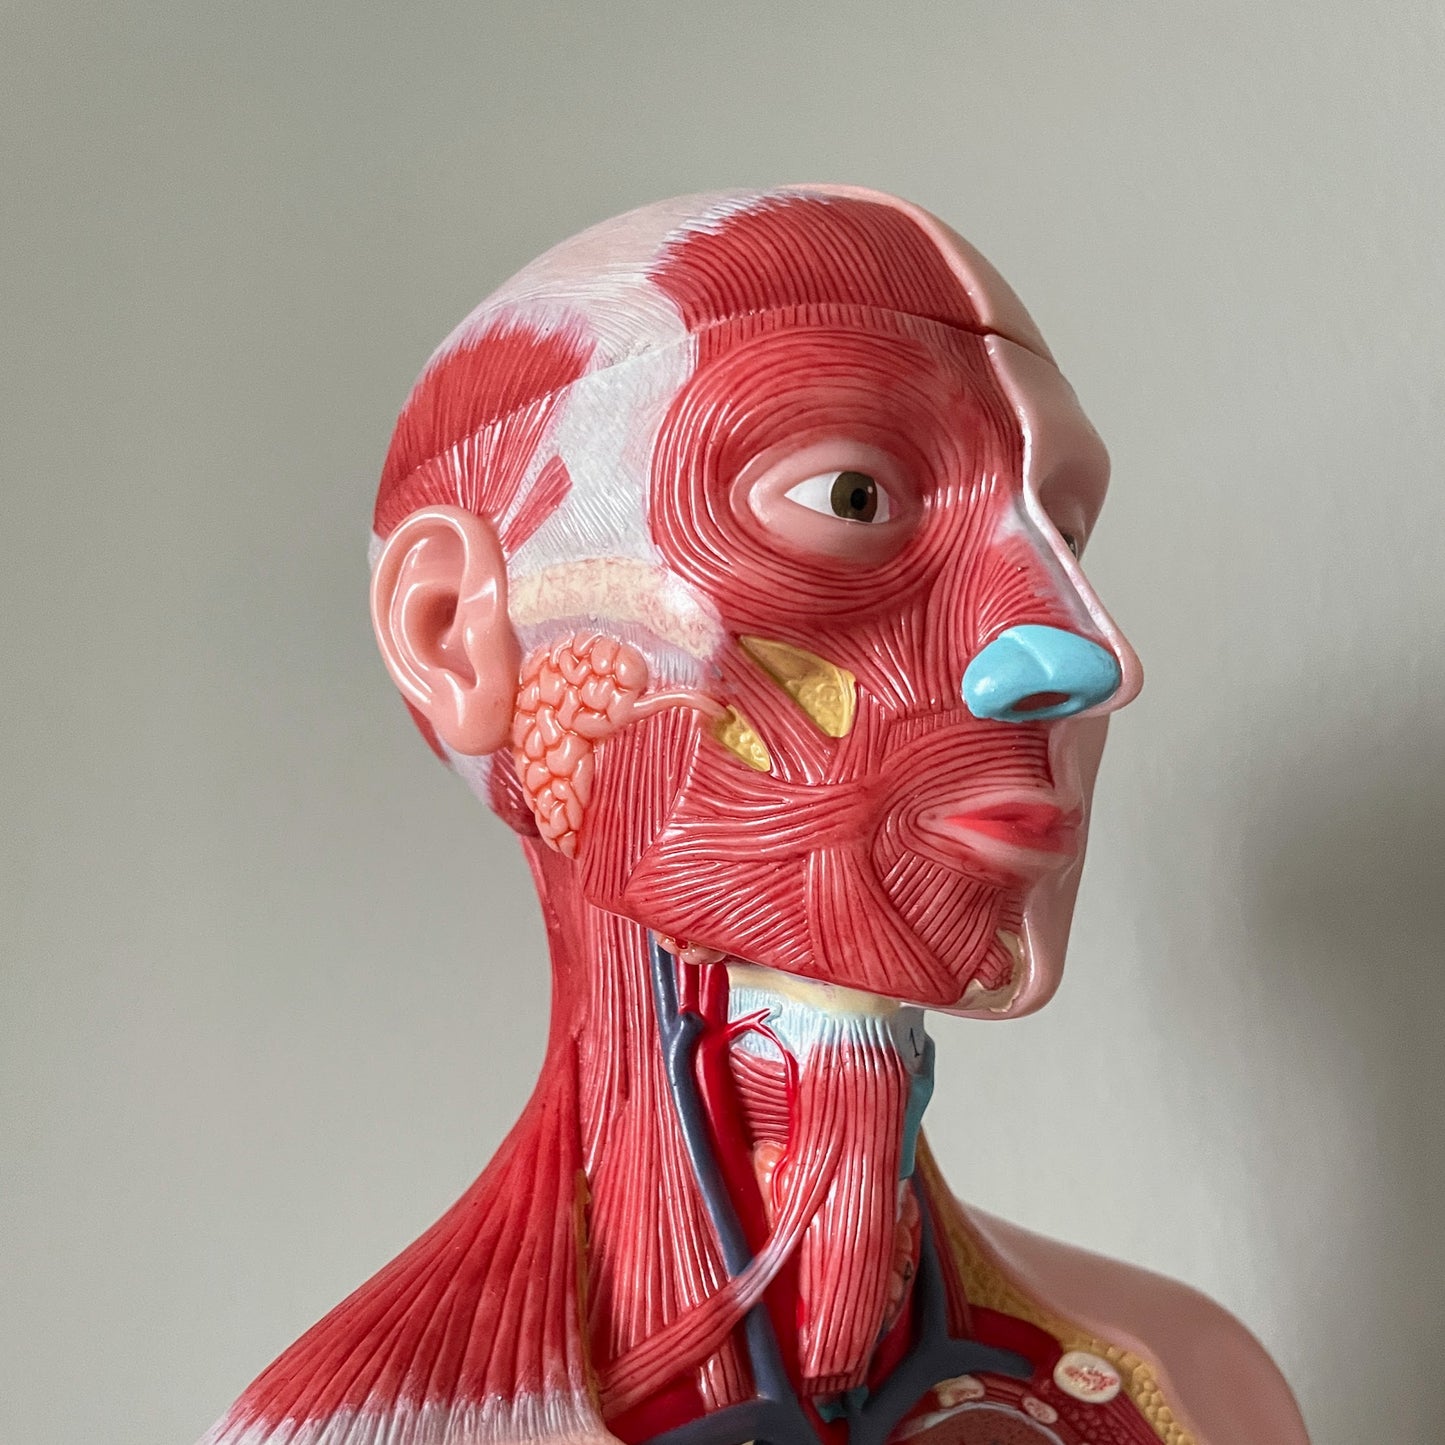 Anatomimodell med muskulatur, båda könen och avtagbara organ